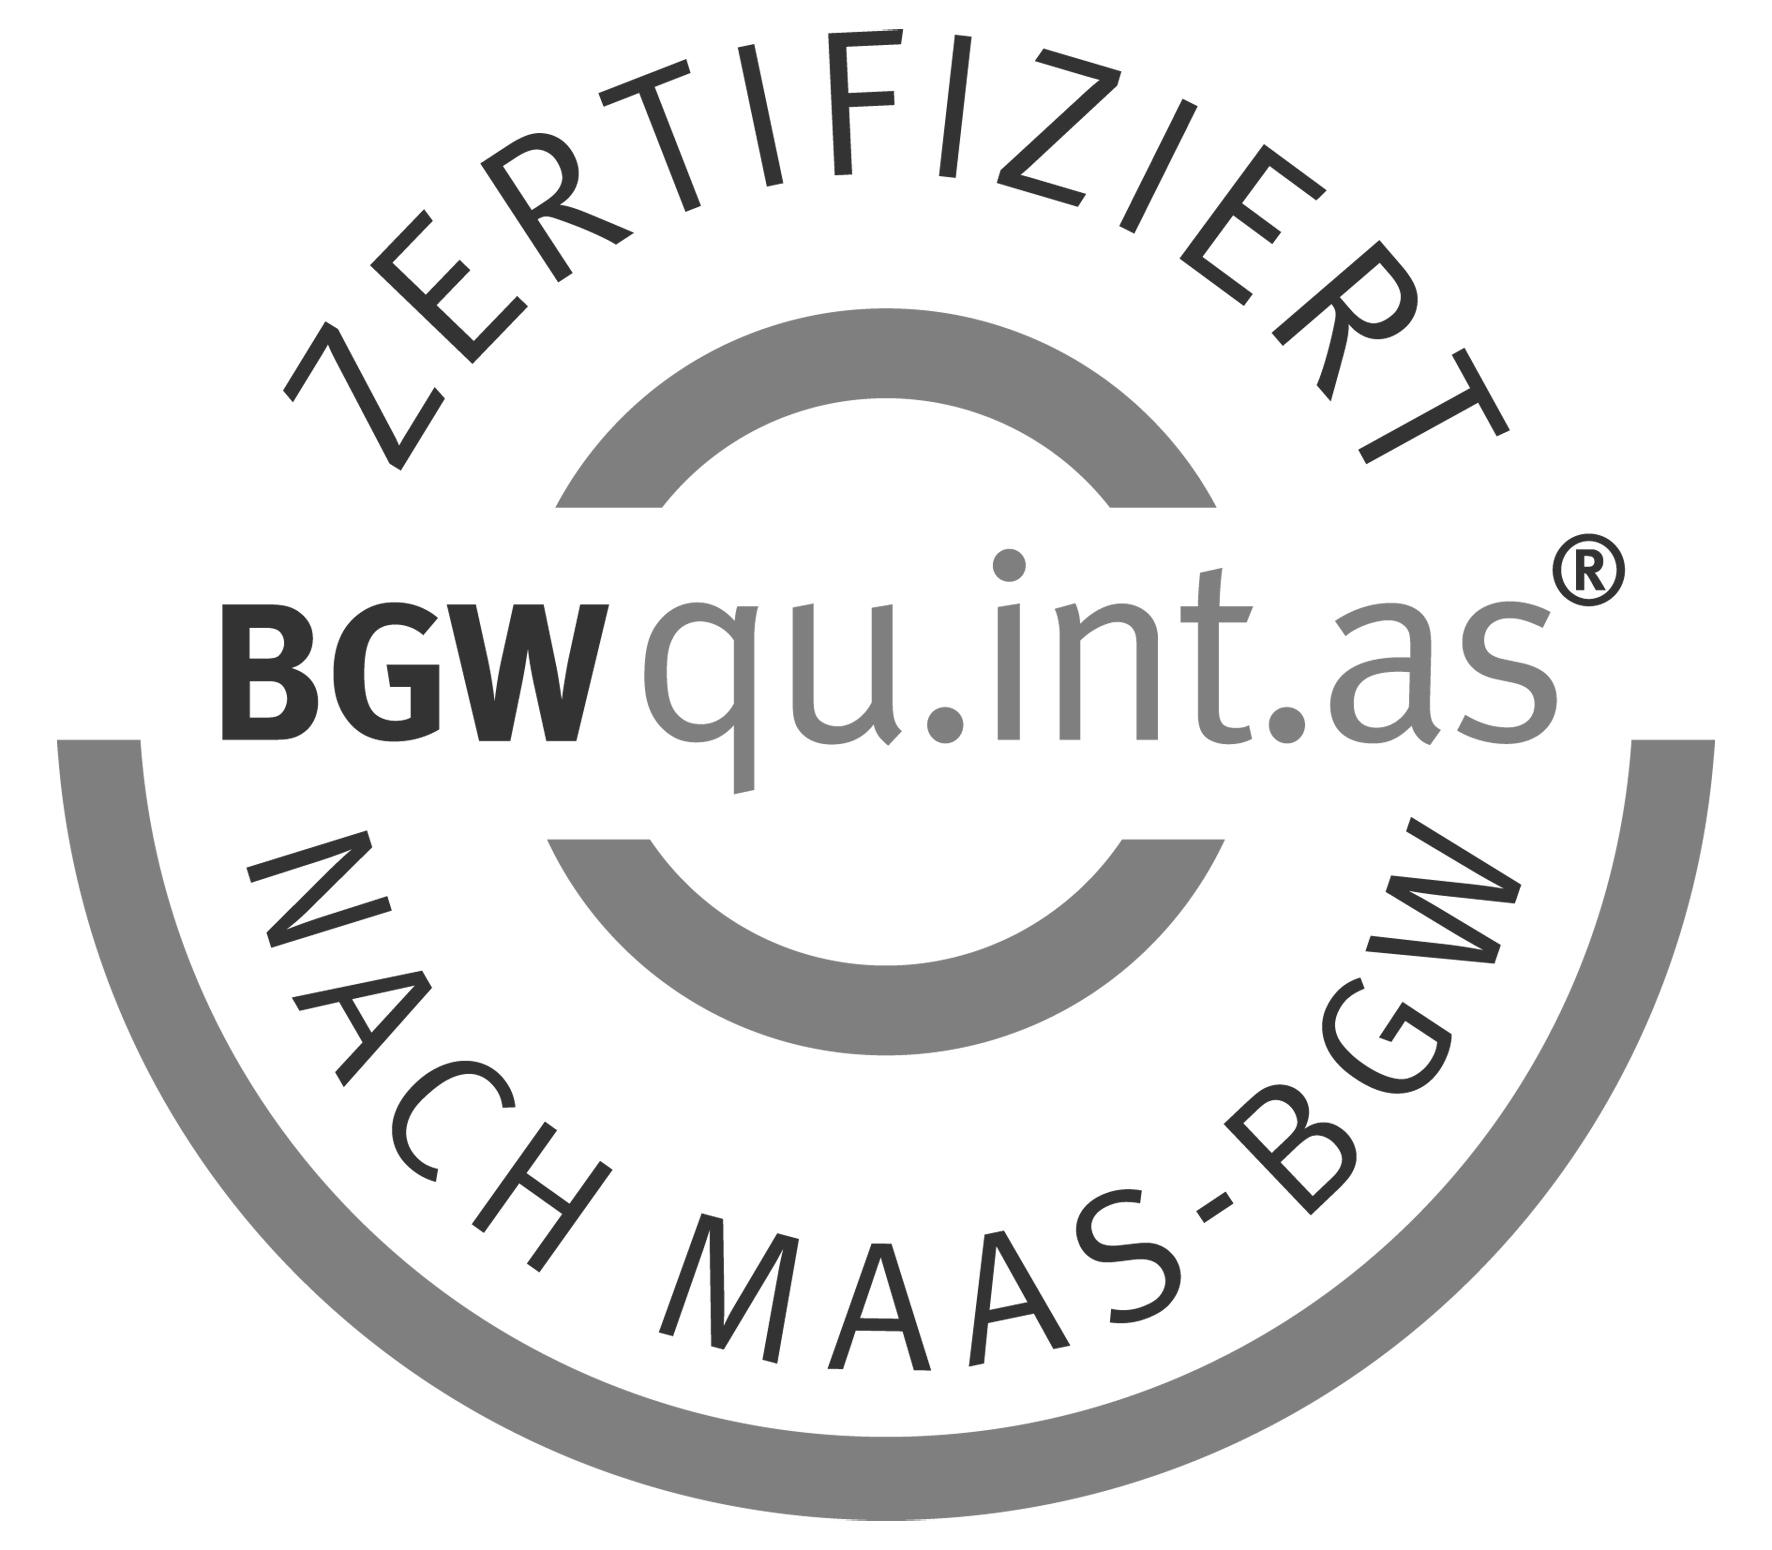 Abbildung: Prüfsiegel der BGW für Arbeitsschutz und Link zu weiterführenden Informationen https://www.bgw-online.de/bgw-online-de/themen/sicher-mit-system/arbeitsschutz-mit-system